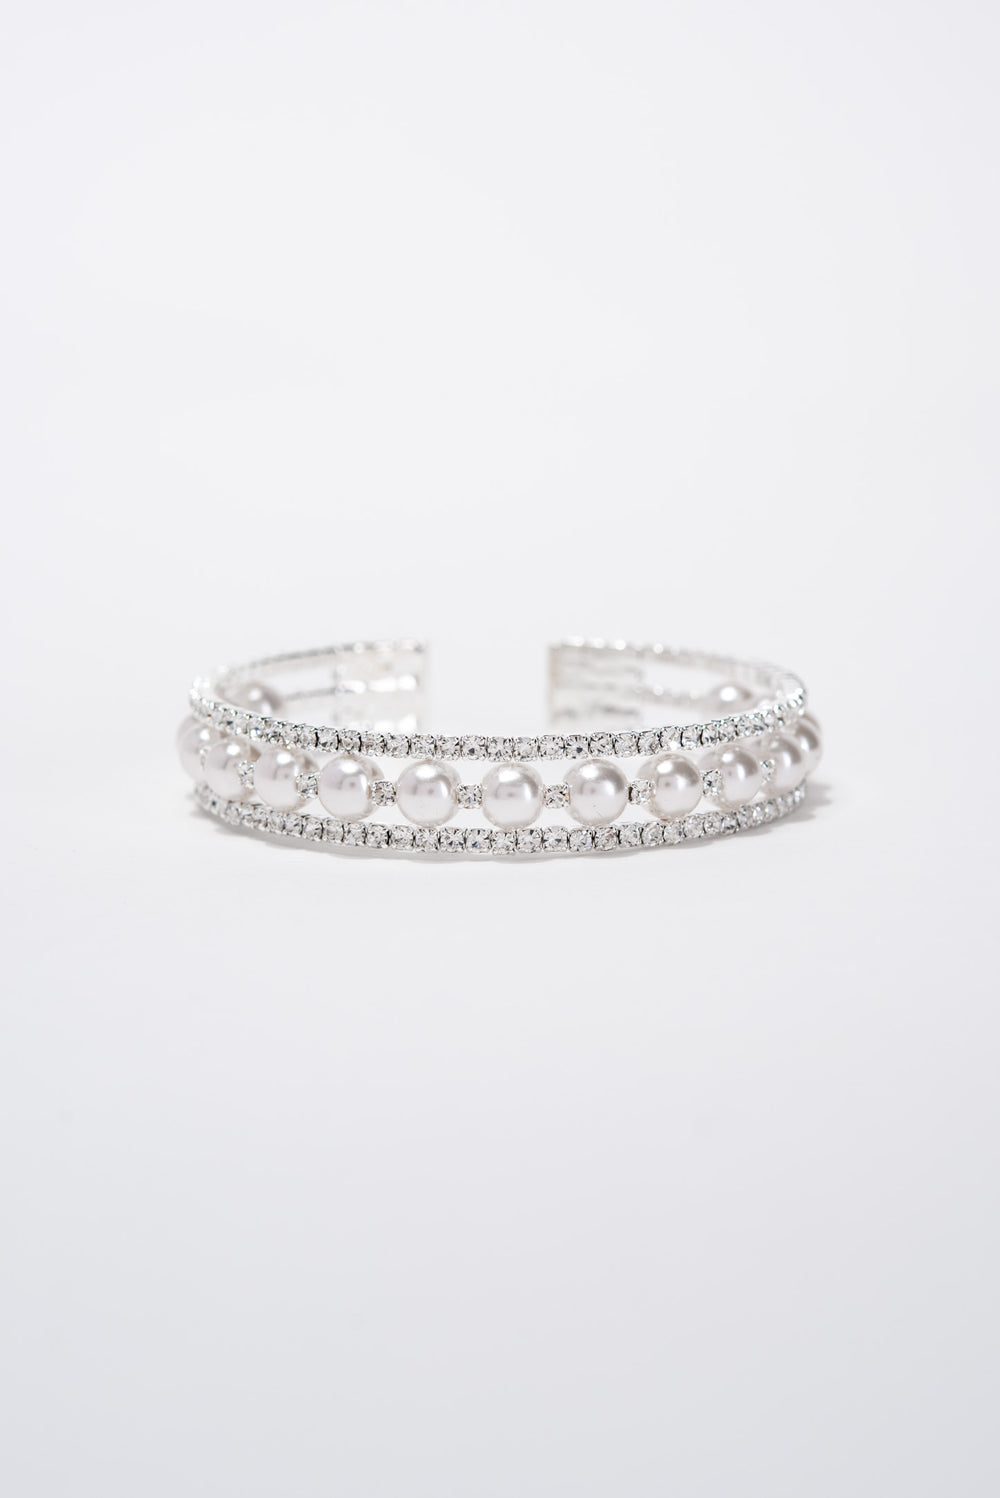 Maeve 3 Line Crystal Rhinestone Pearl Cuff Bracelet - Silver